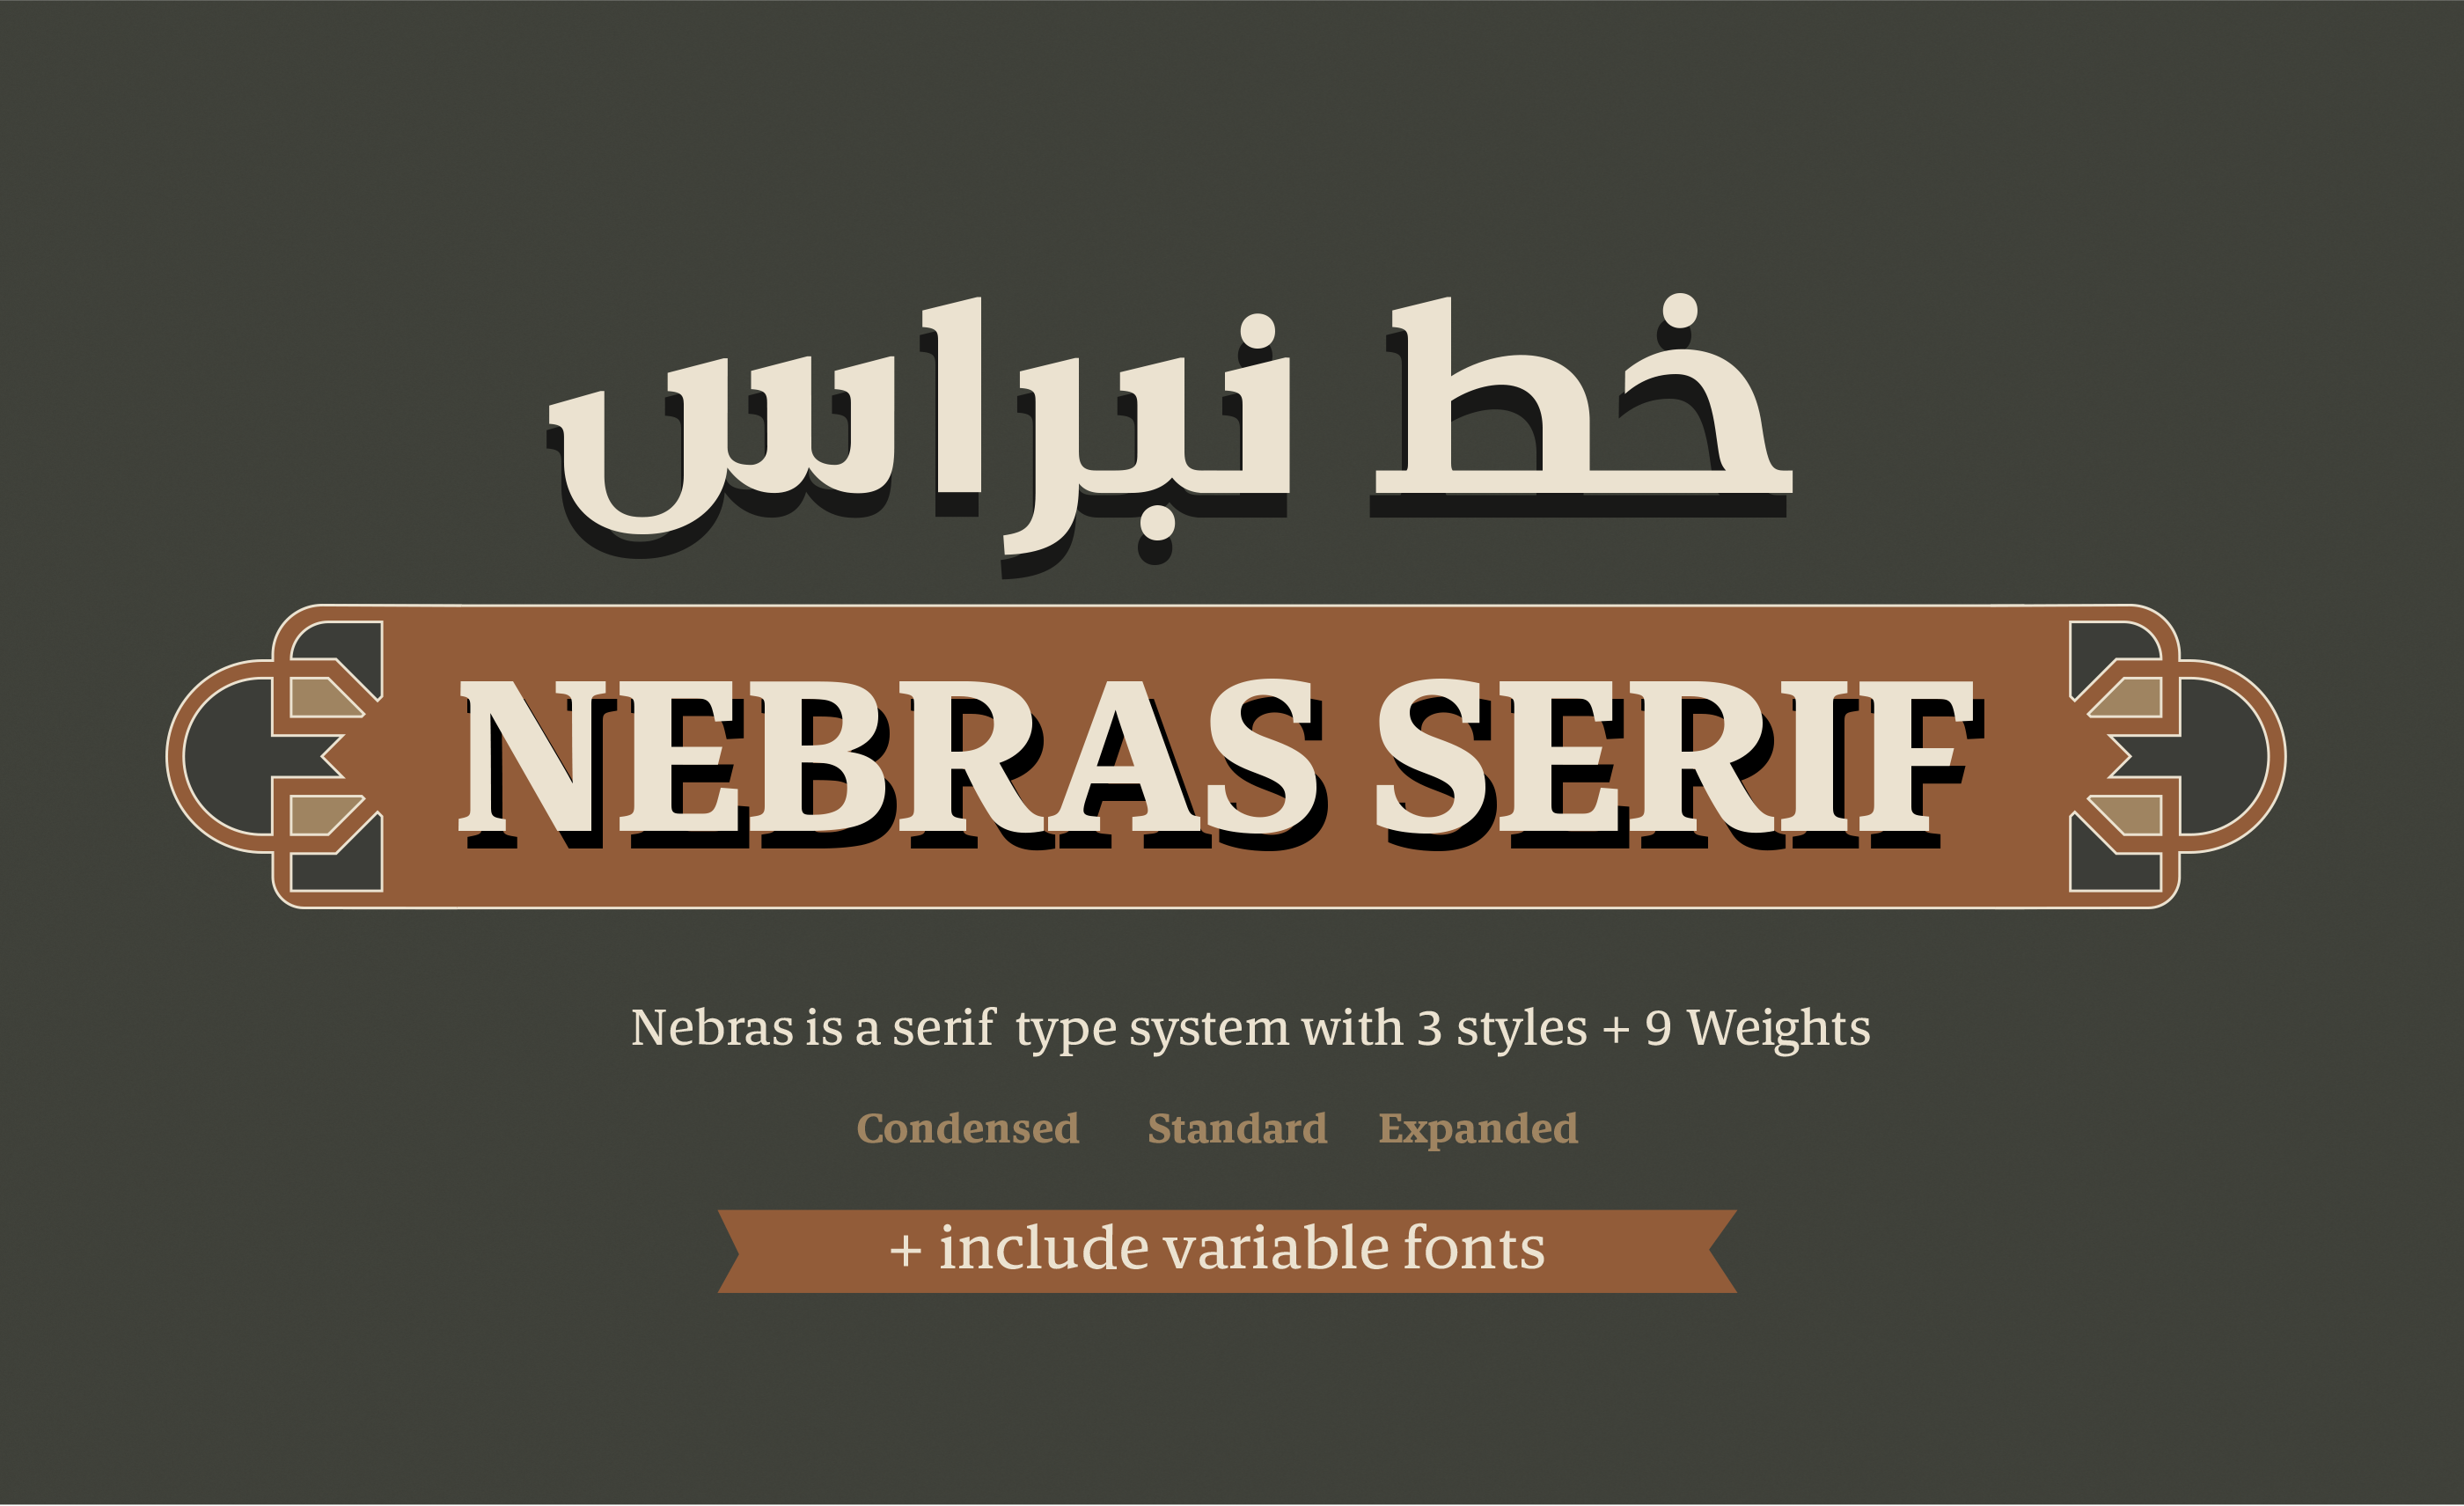 Beispiel einer Nebras Serif Expanded-Schriftart